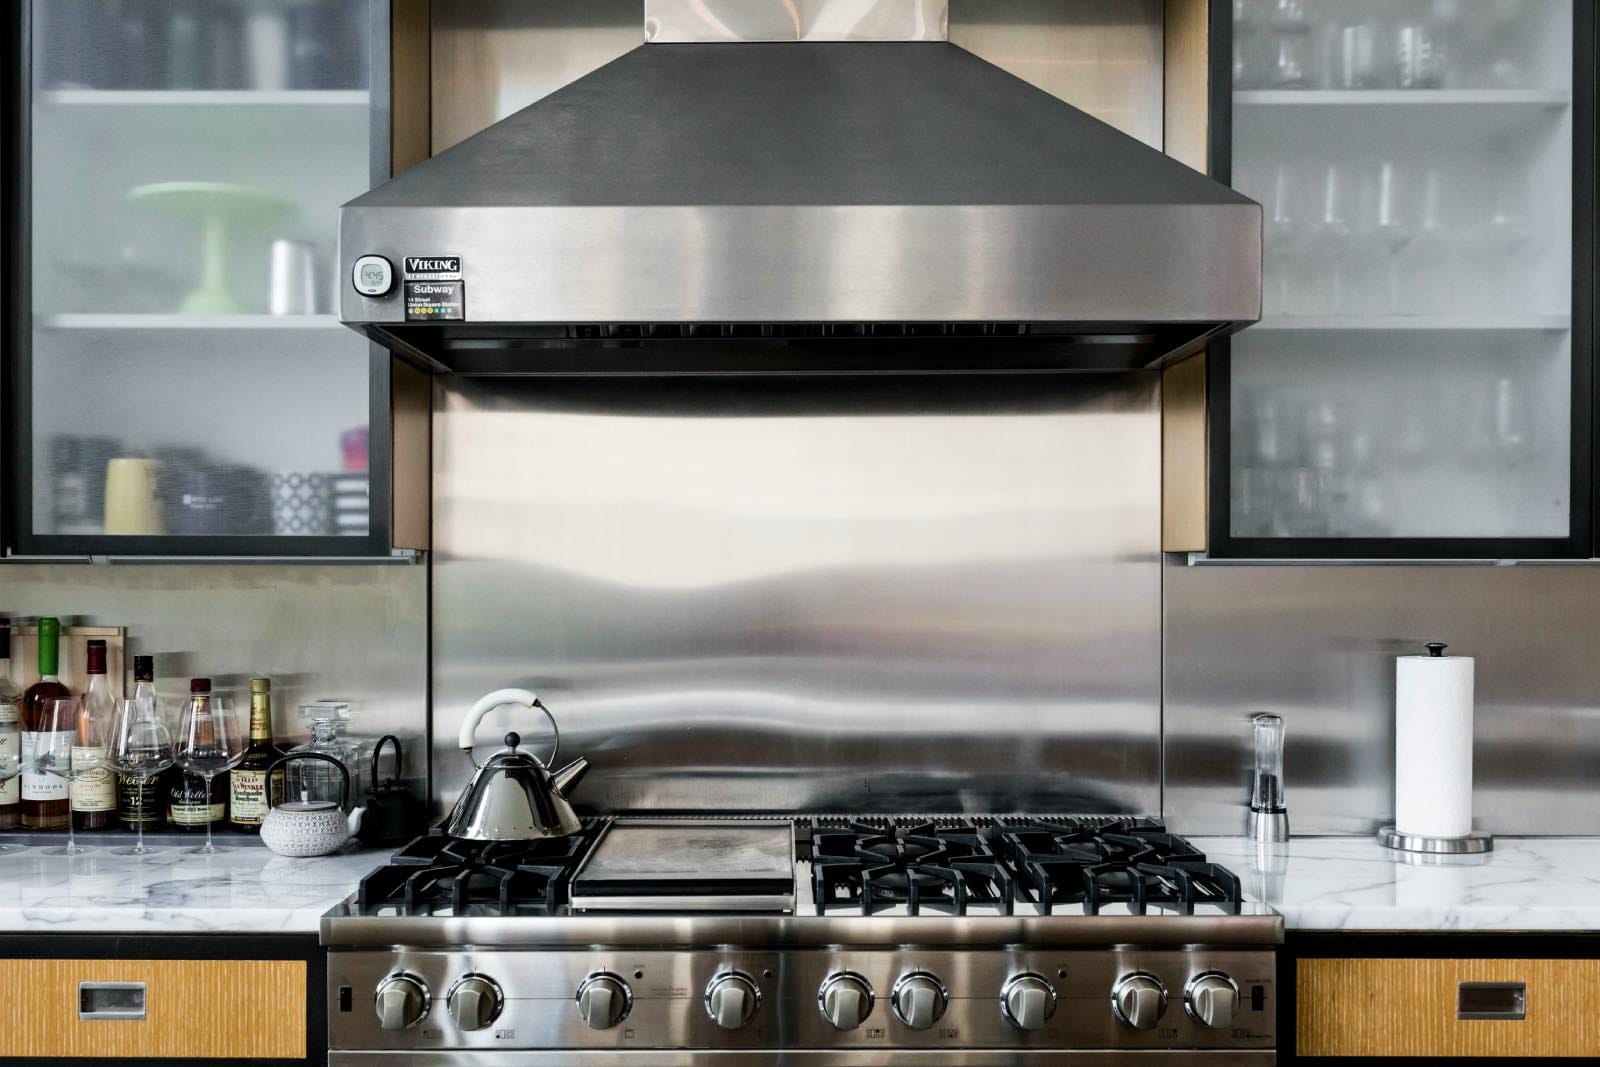 stainless steel nacksplash in modern kitchen at home